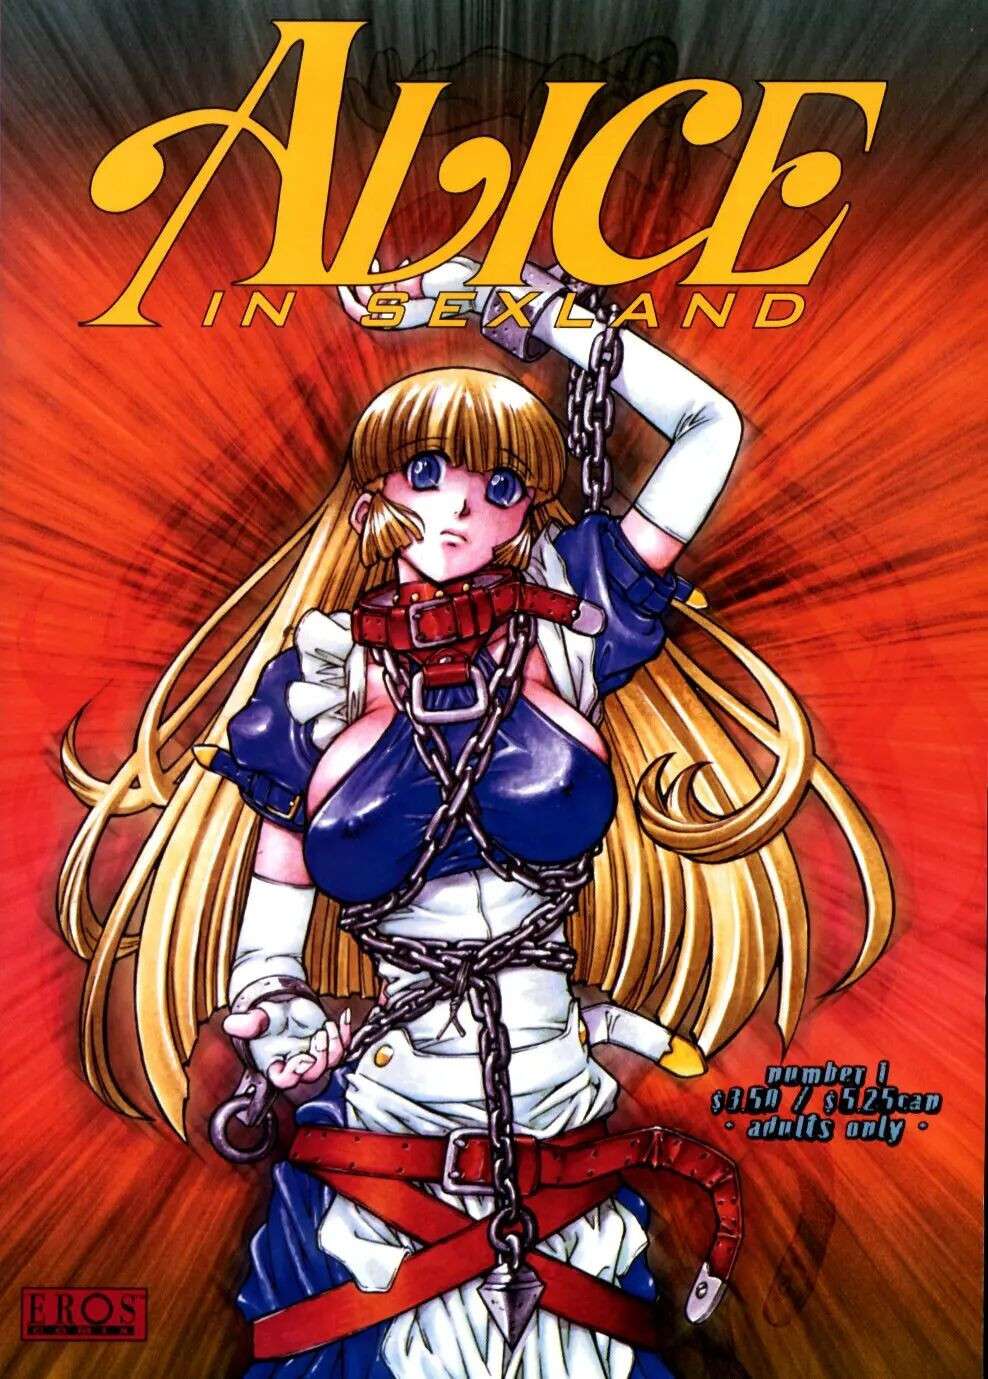 [Jyubaori Masyumaro] Alice IN SEXLAND ch.1-15 complete [English]